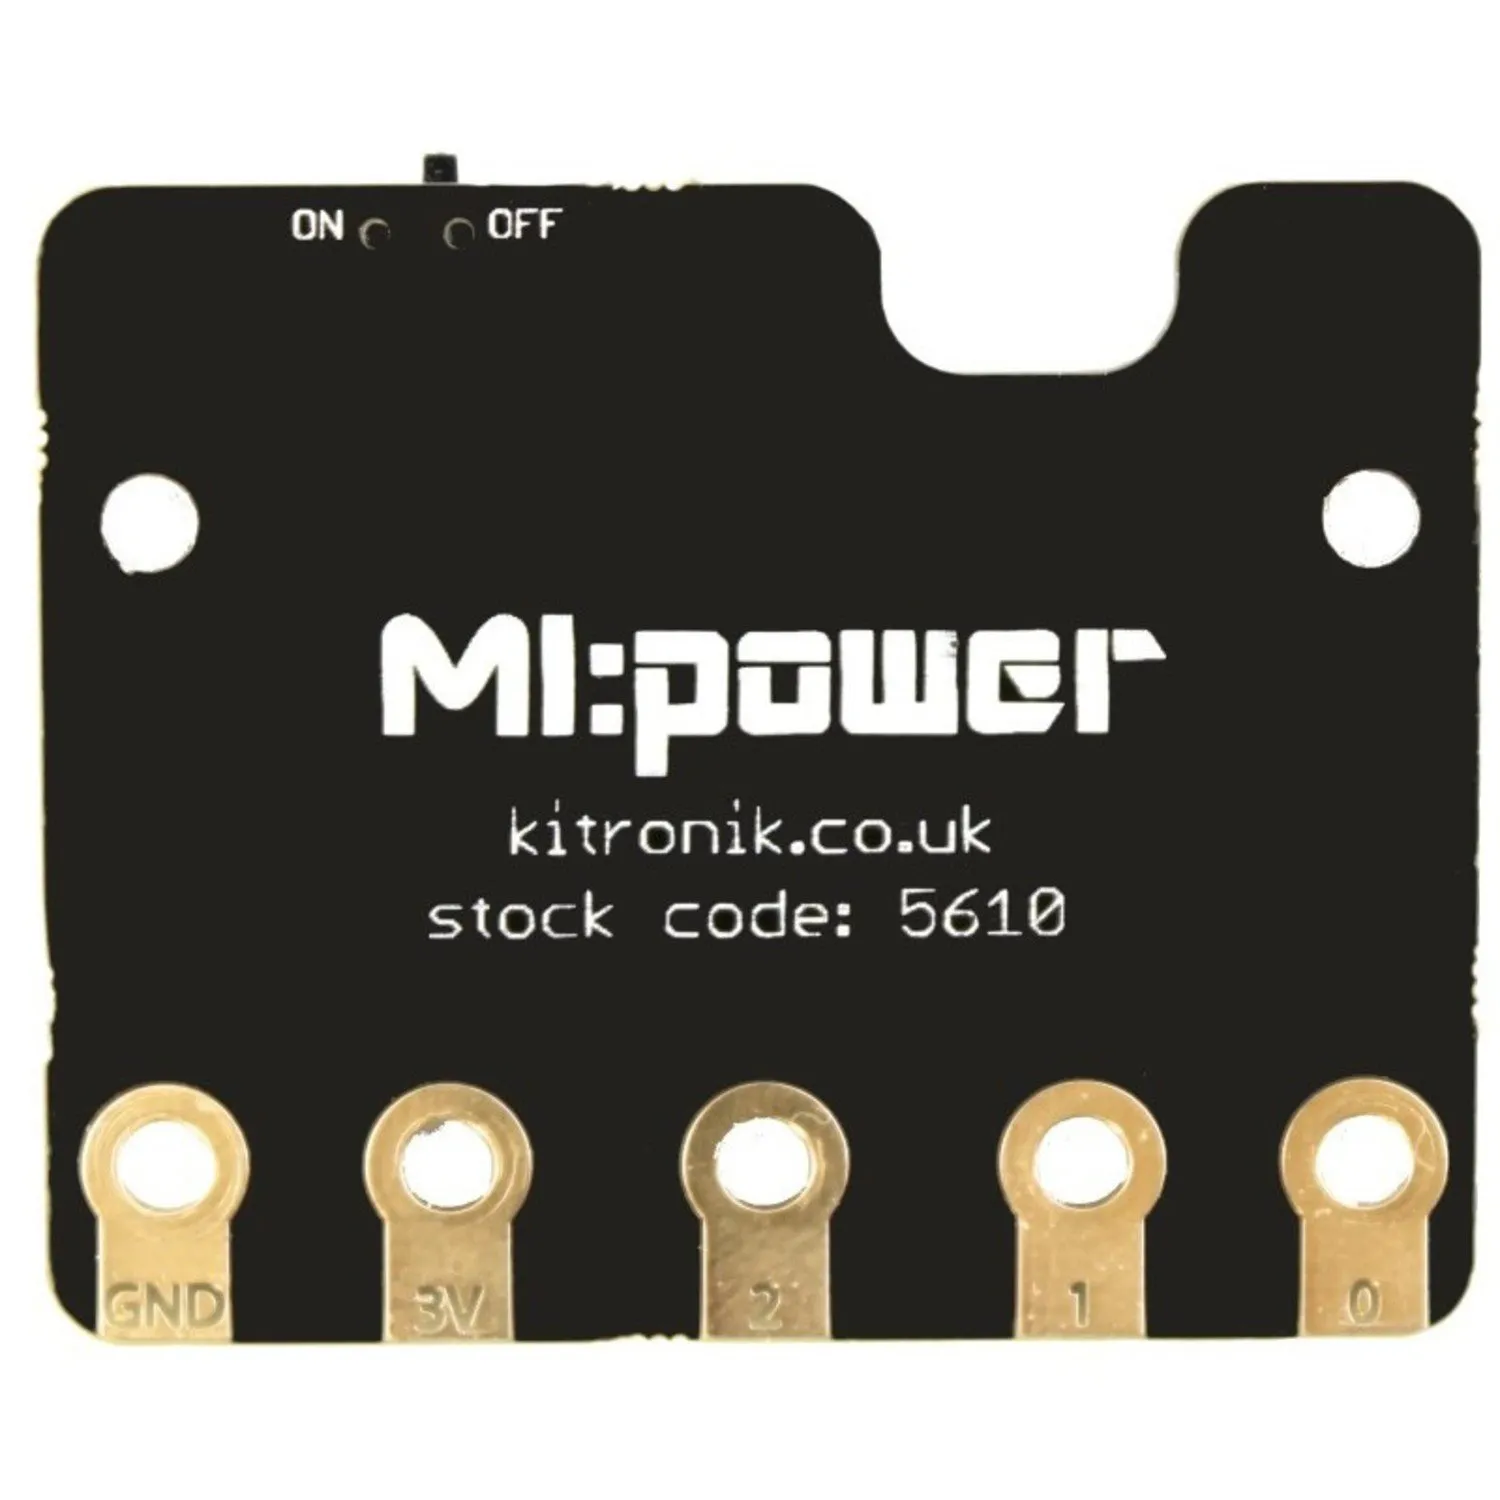 Photo of MI:power board for the BBC micro:bit